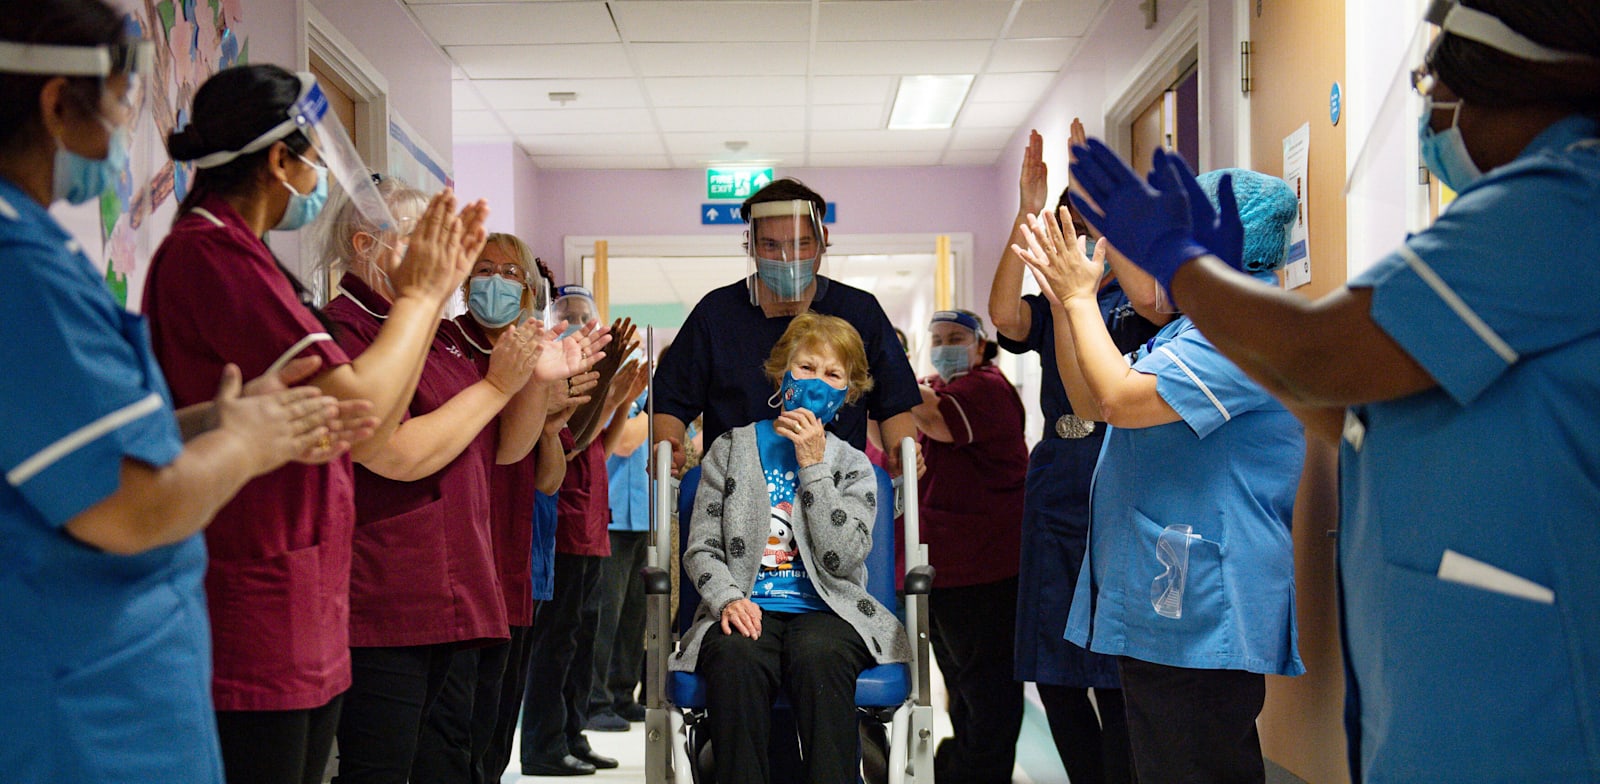 מרגרט קינן הבריטית זוכה למחיאות כפיים מהצוות הרפואי, אחרי שהייתה הראשונה בבריטניה לקבל את החיסון של פייזר לקורונה / צילום: Associated Press, Jacob King